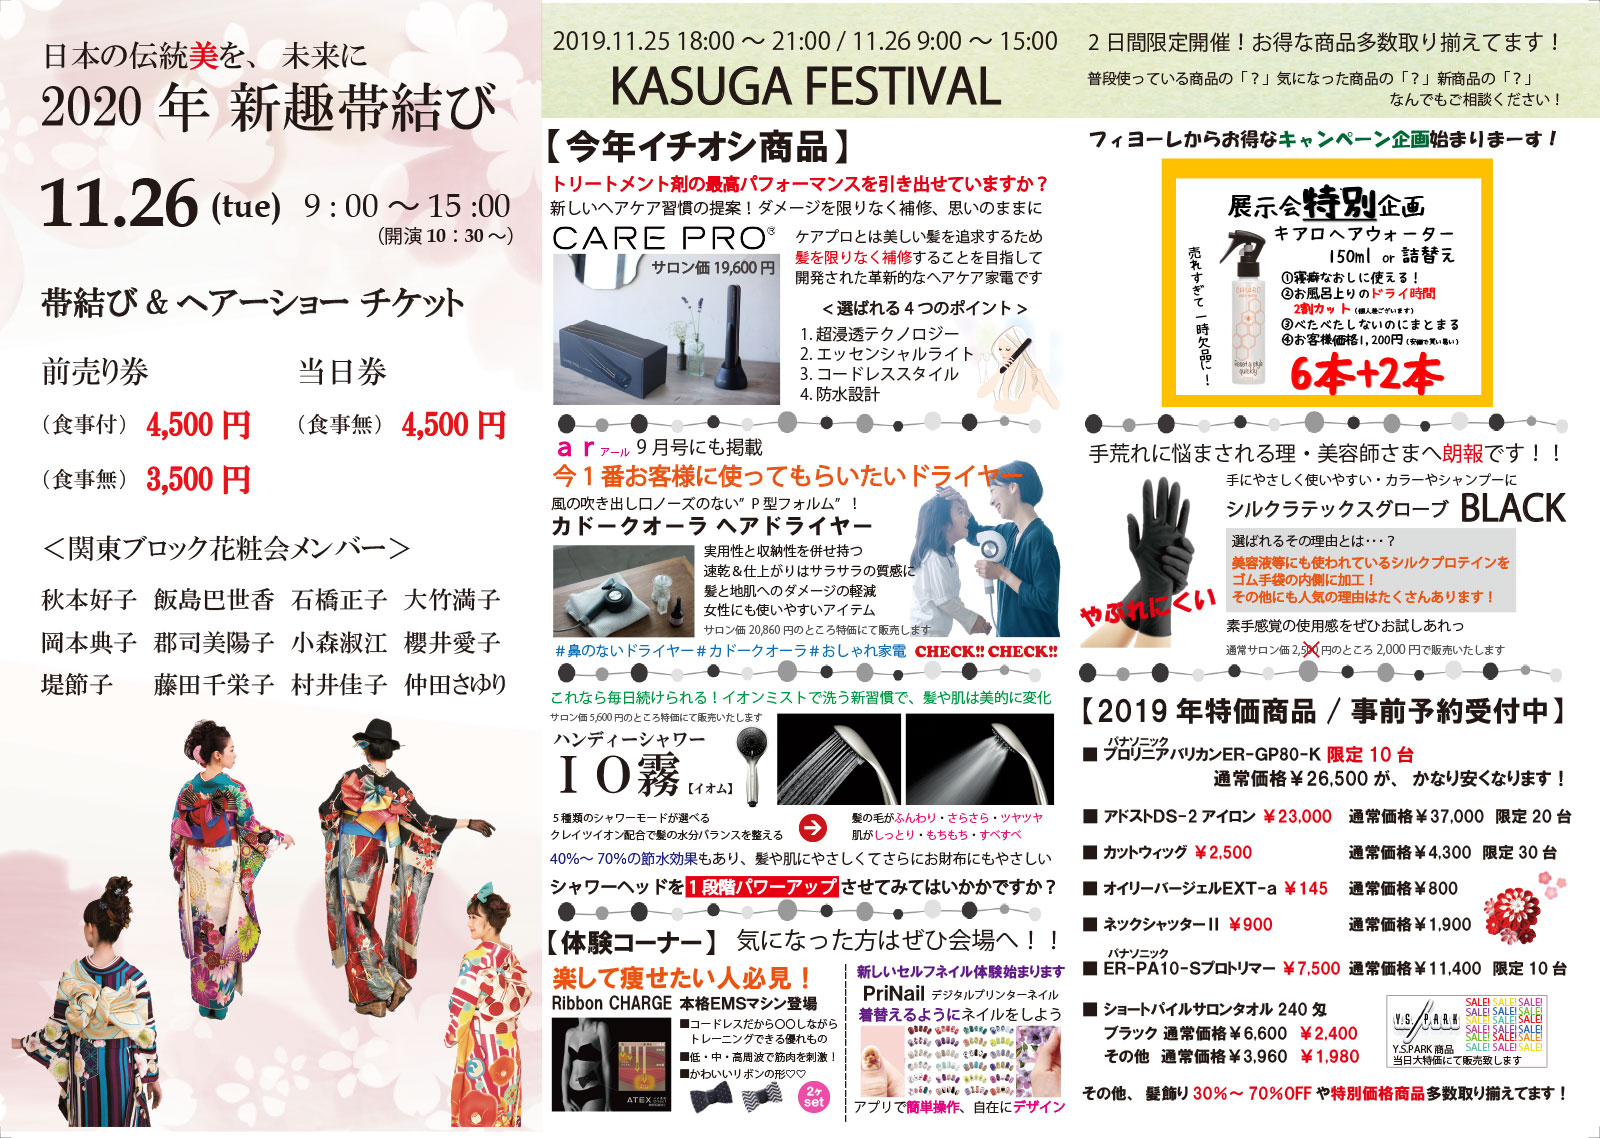 KASUGA FESTIVAL 11.25～11.26開催!!!